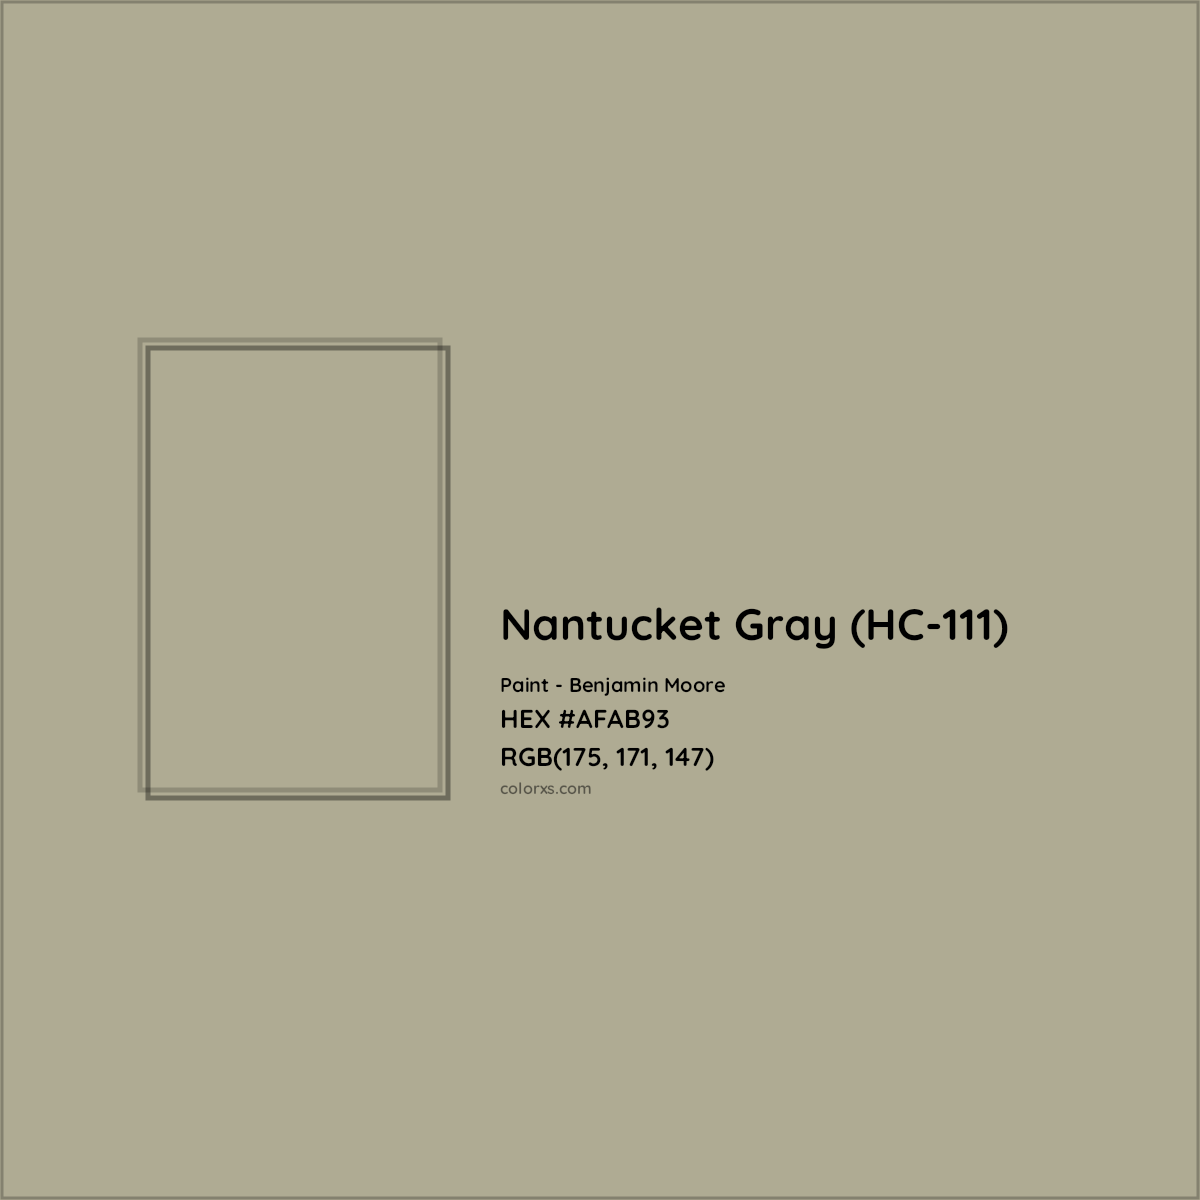 HEX #AFAB93 Nantucket Gray (HC-111) Paint Benjamin Moore - Color Code